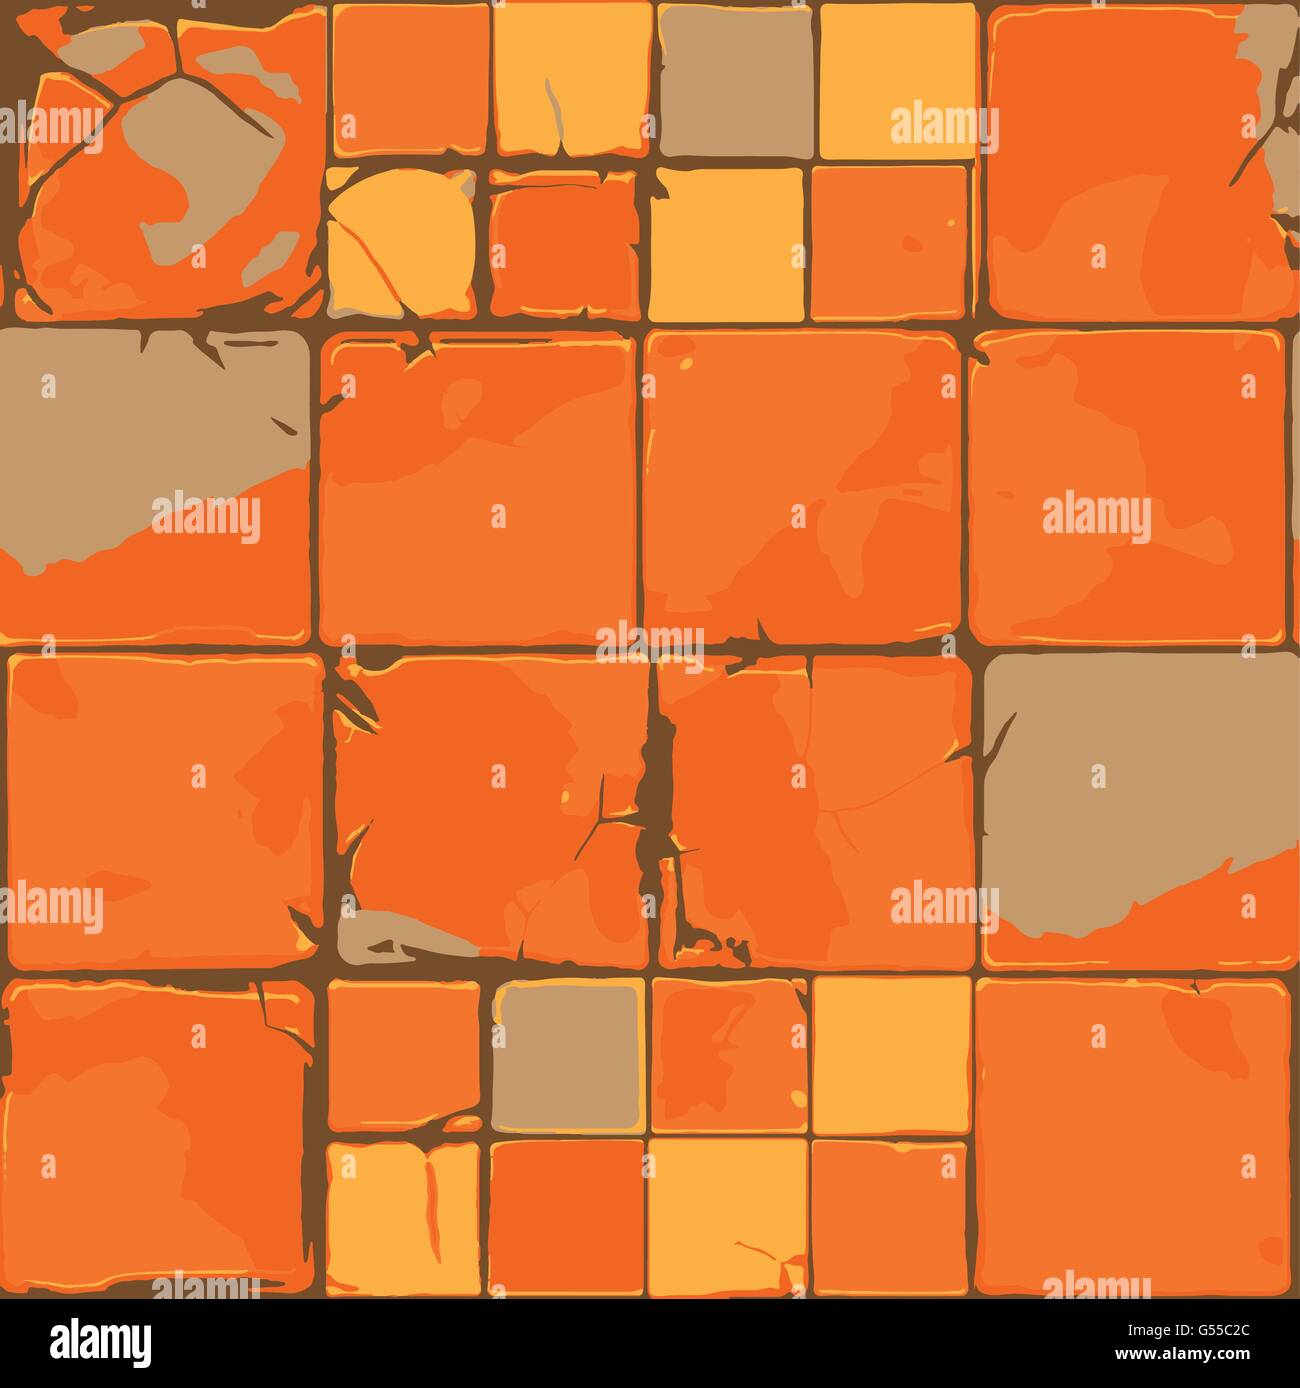 Orange Grunge alte rissige Fliesen-Vektor-Design-Hintergrund Stock Vektor